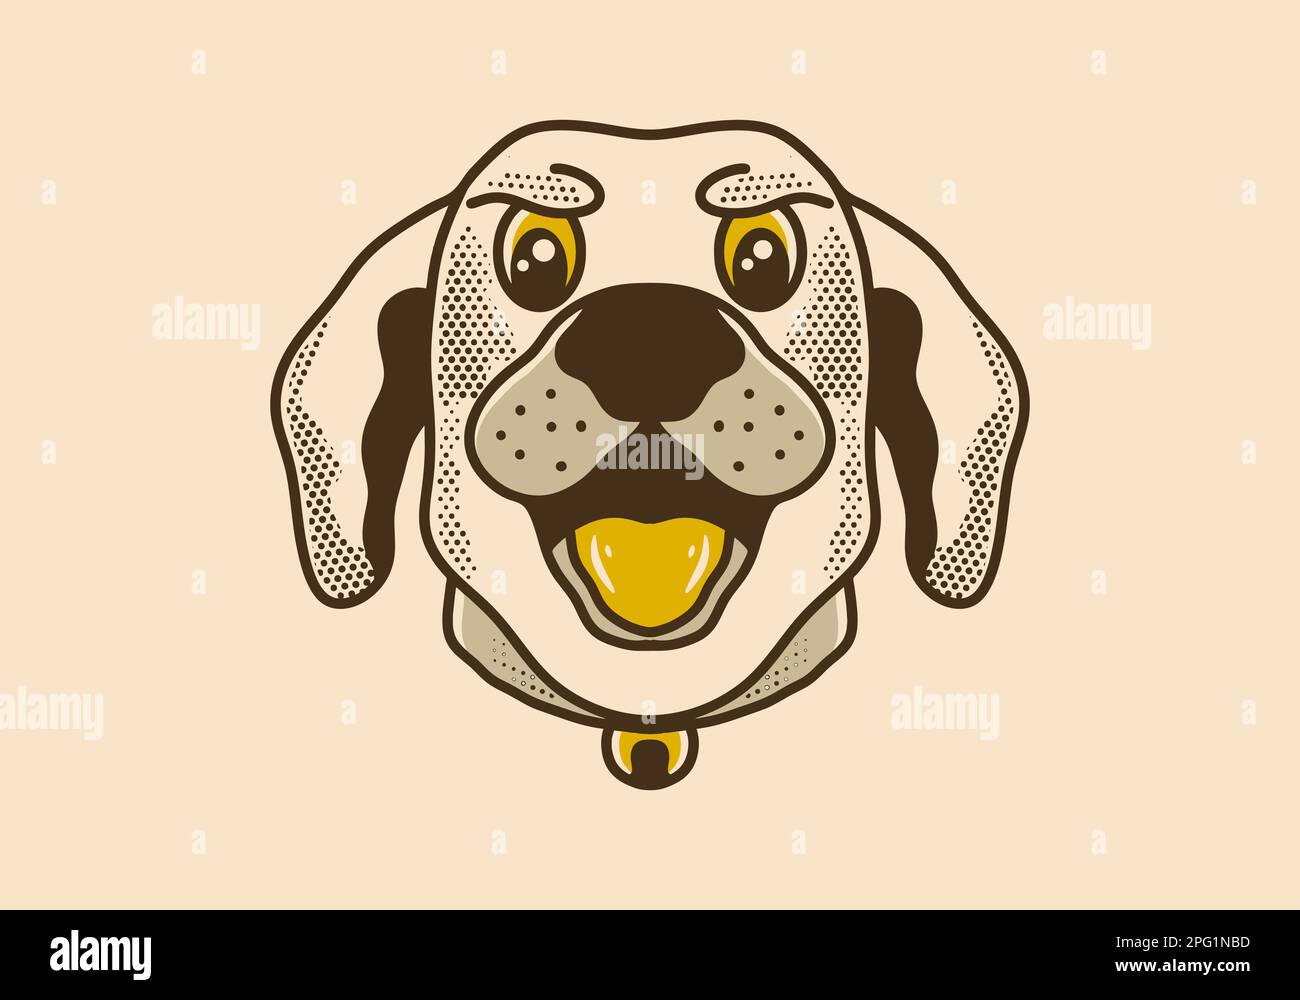 Vintage-Art-Illustrationsdesign eines Hundekopfes mit offenem Mund Stock Vektor